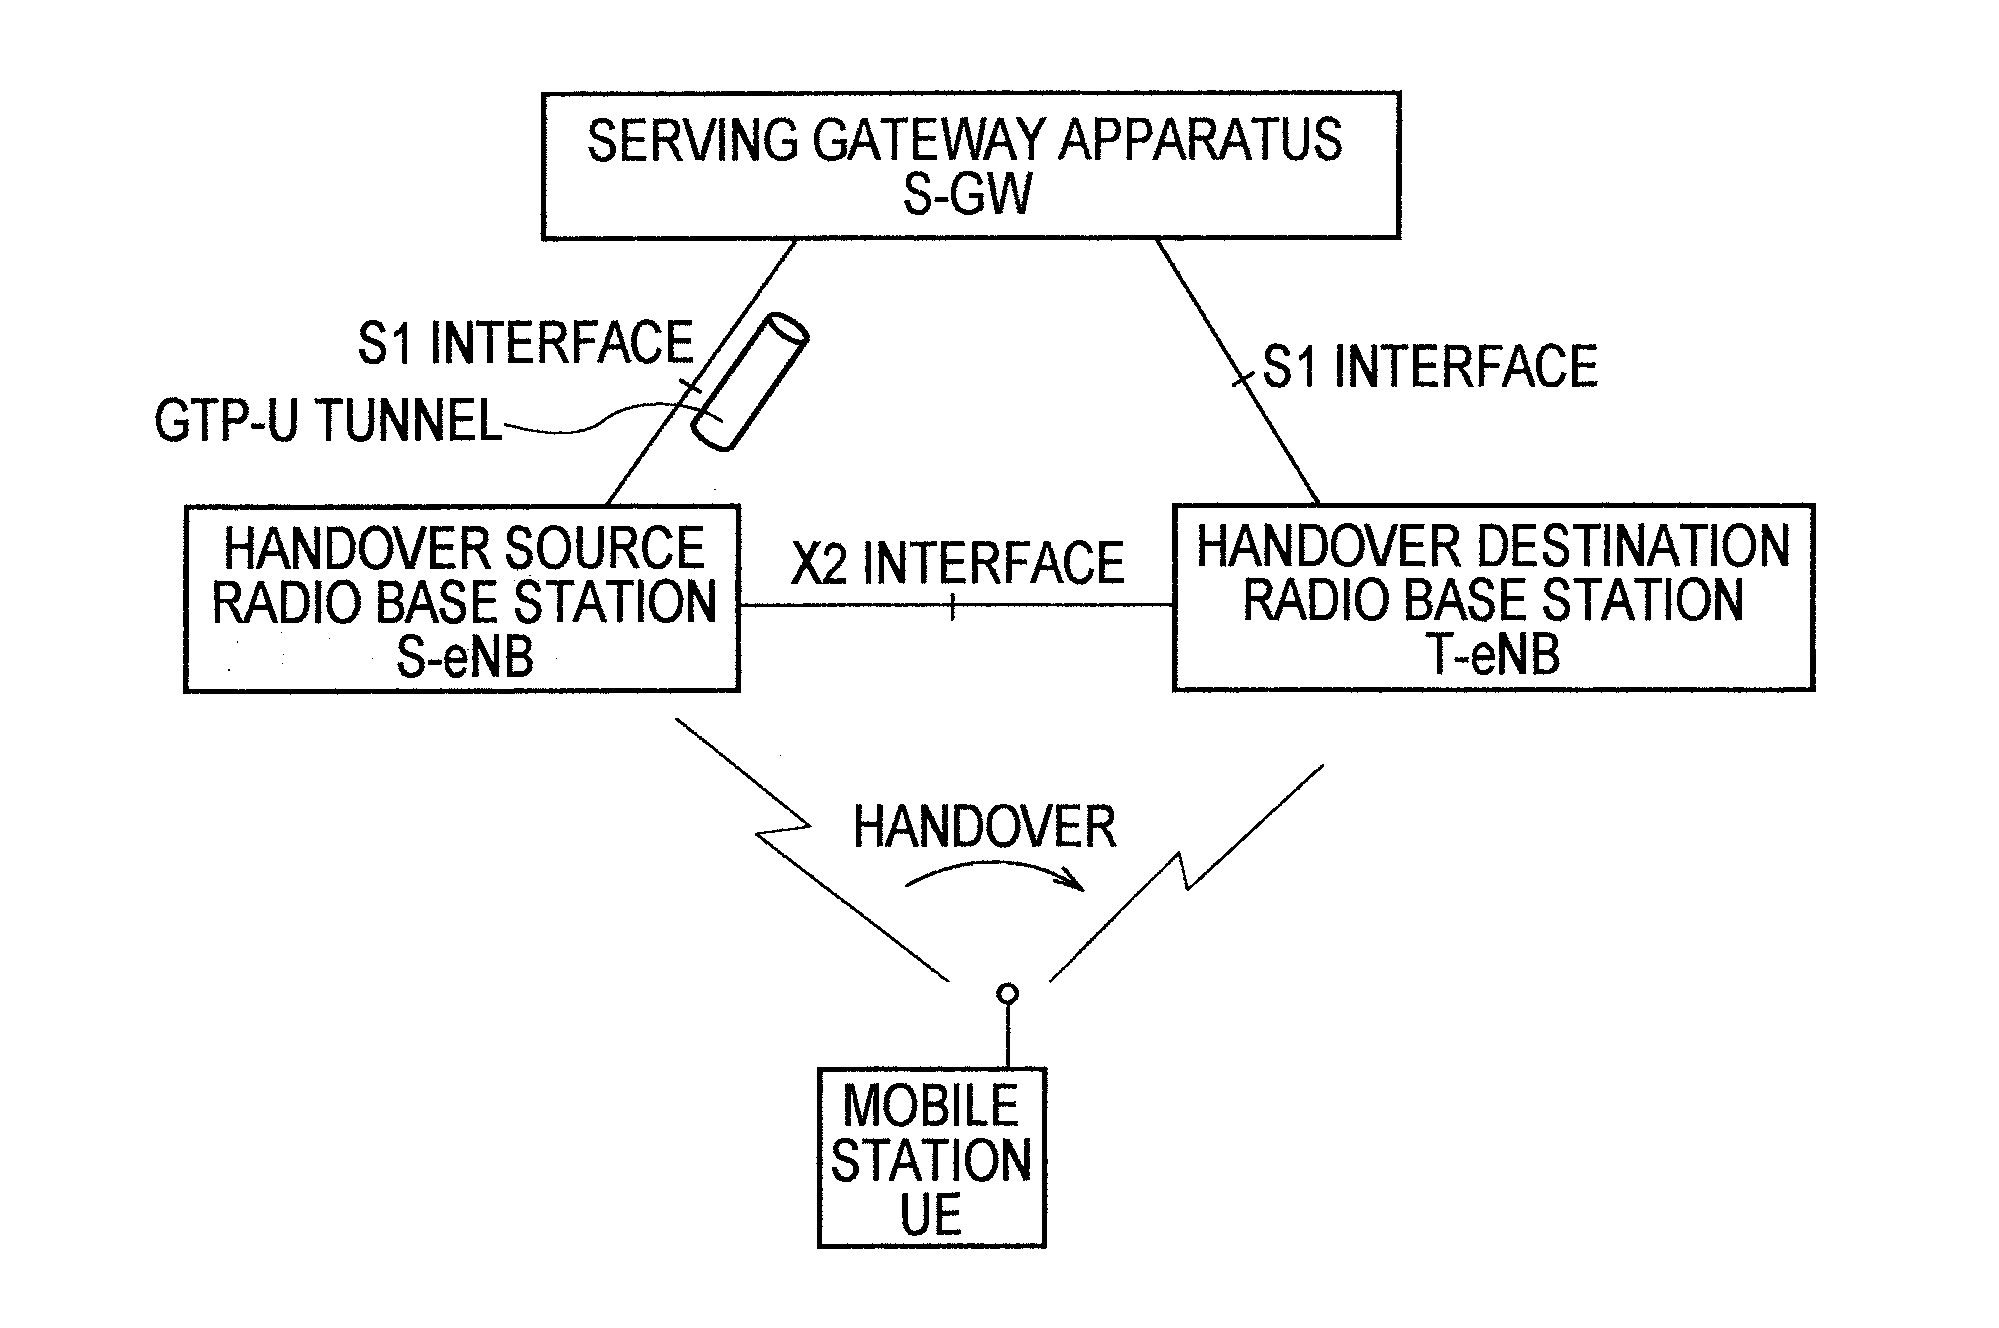 Mobile communication method and radio base station